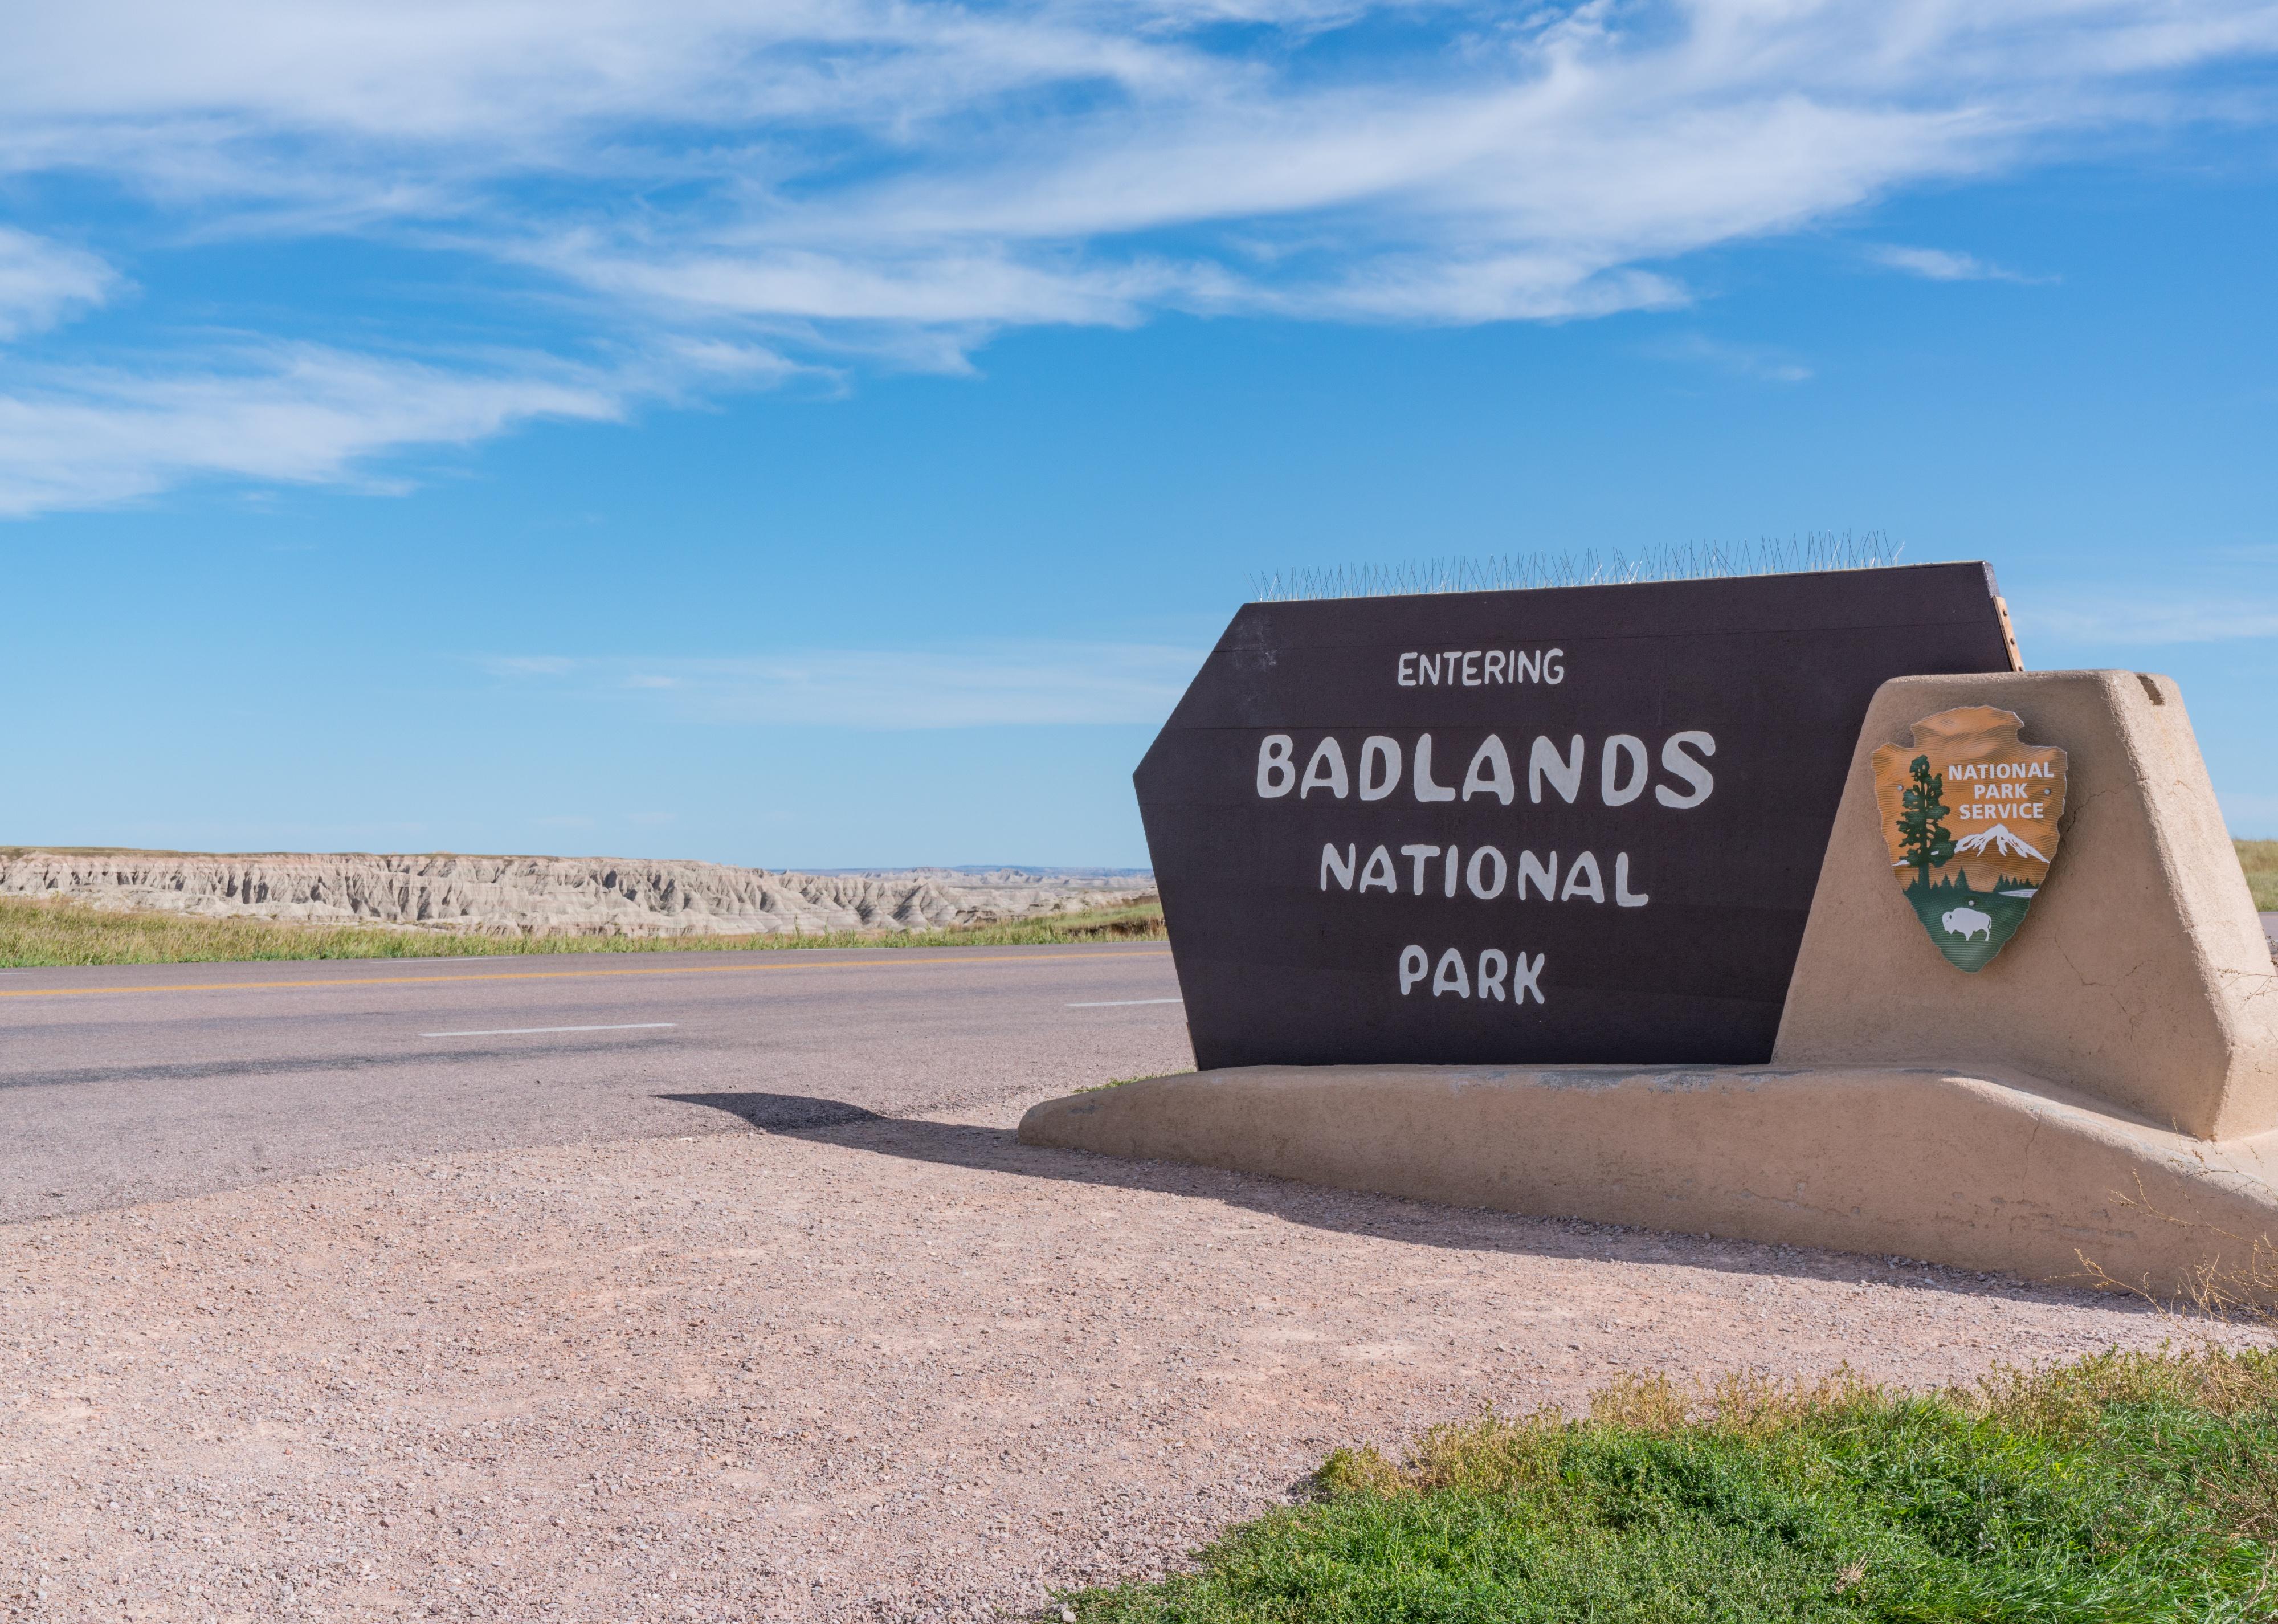 Badlands National Park entrance sign.